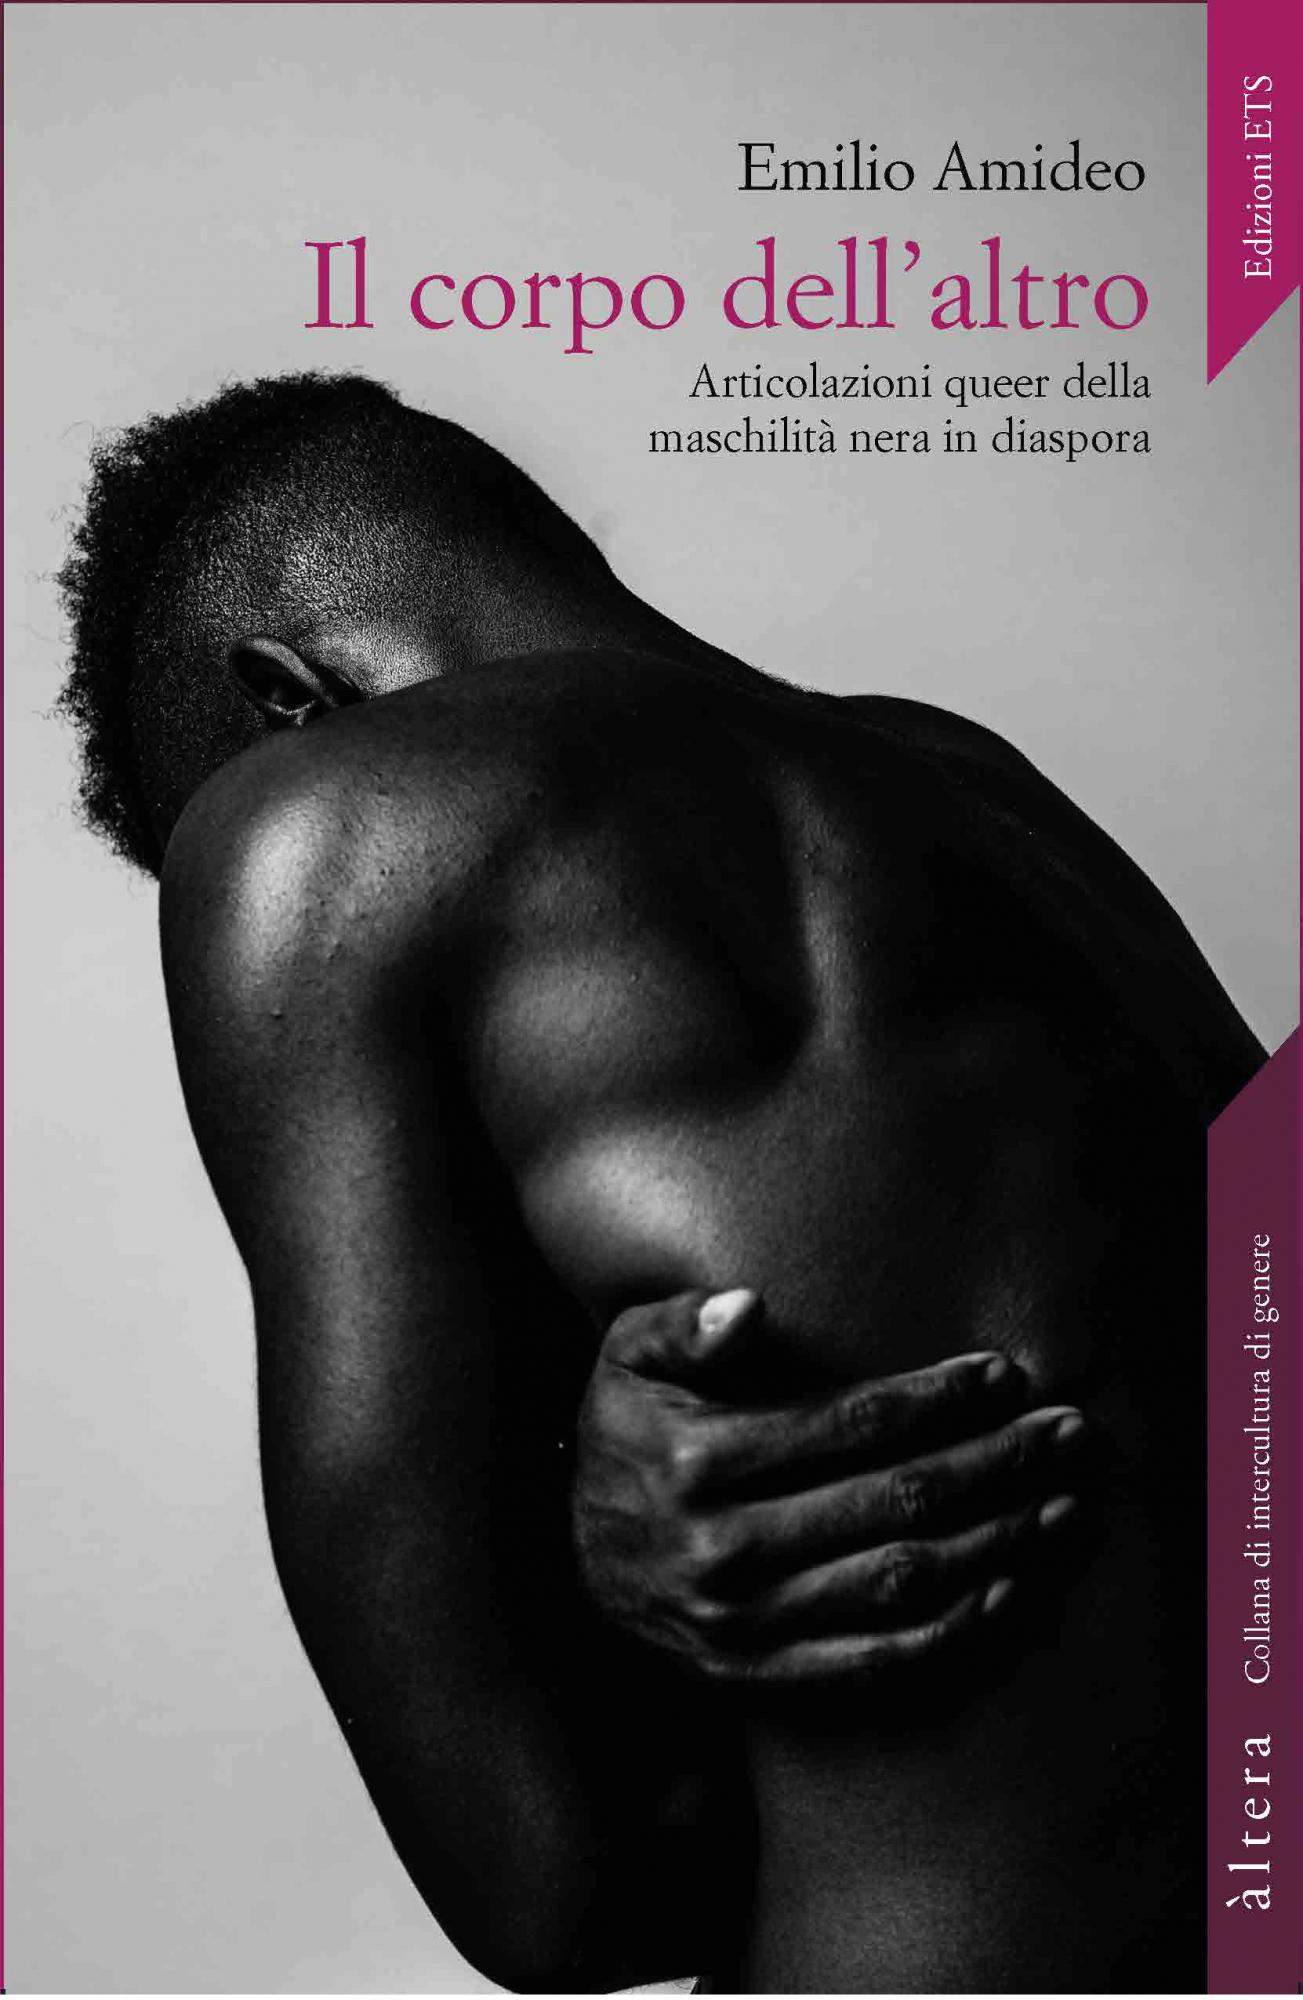 Il corpo dell’altro.Articolazioni queer della maschilità nera in diaspora